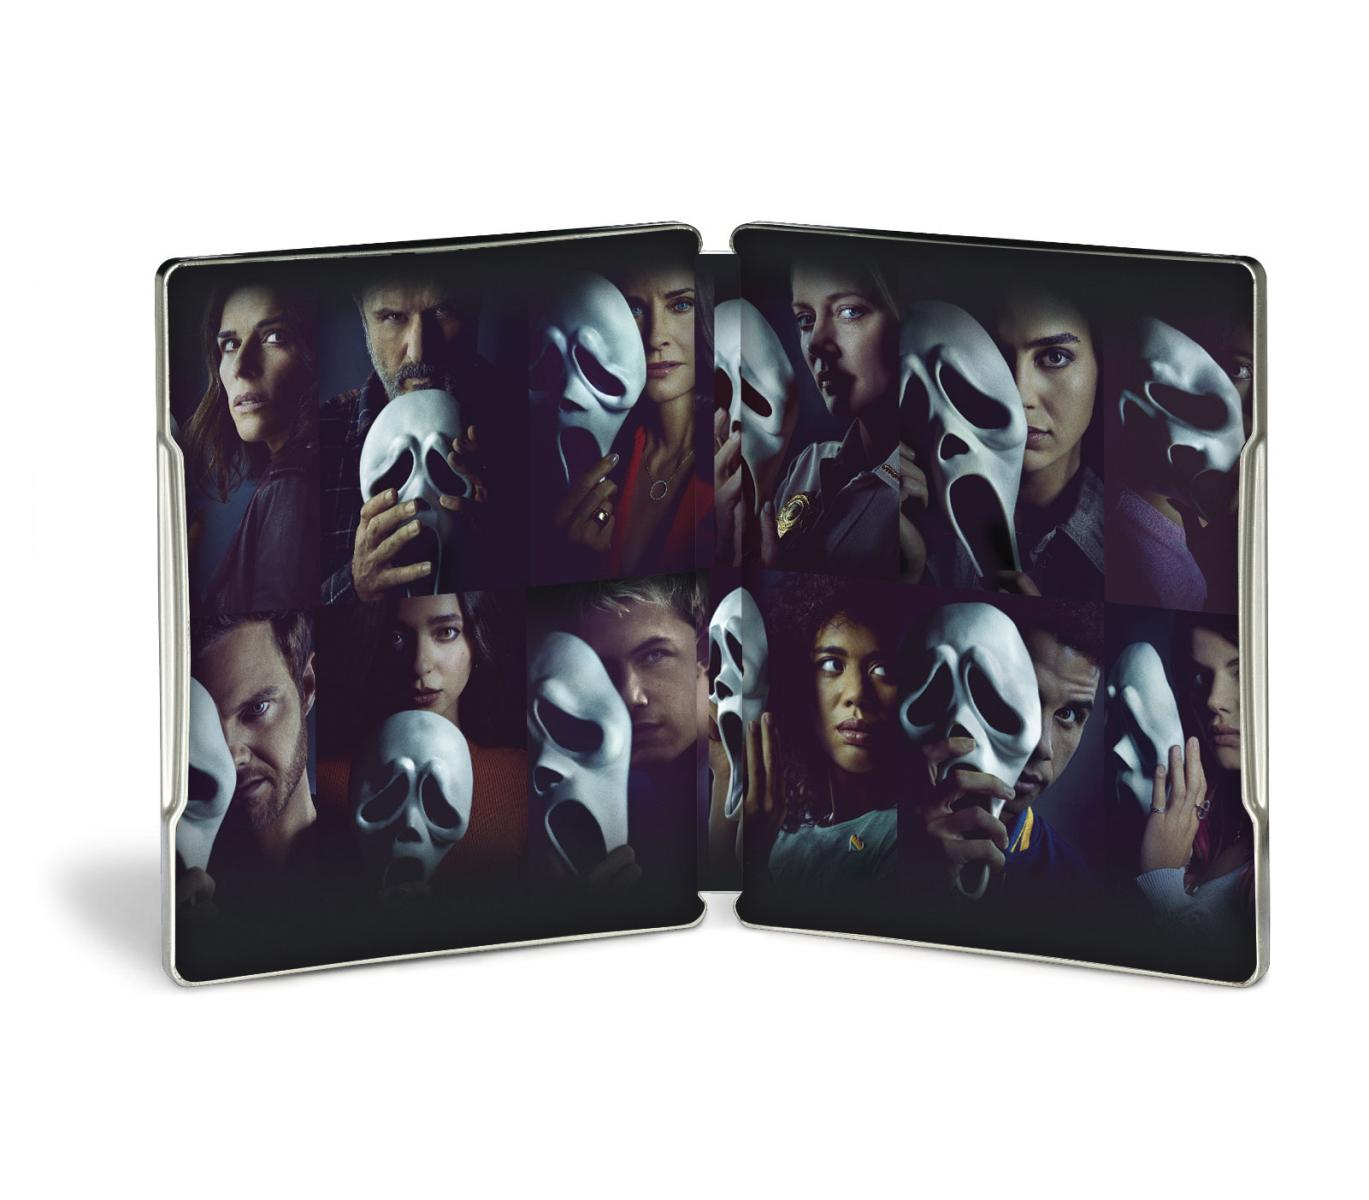 Scream (2022) - Steelbook Blu-ray 4K UHD + Blu-ray (Blu-ray) Image 5